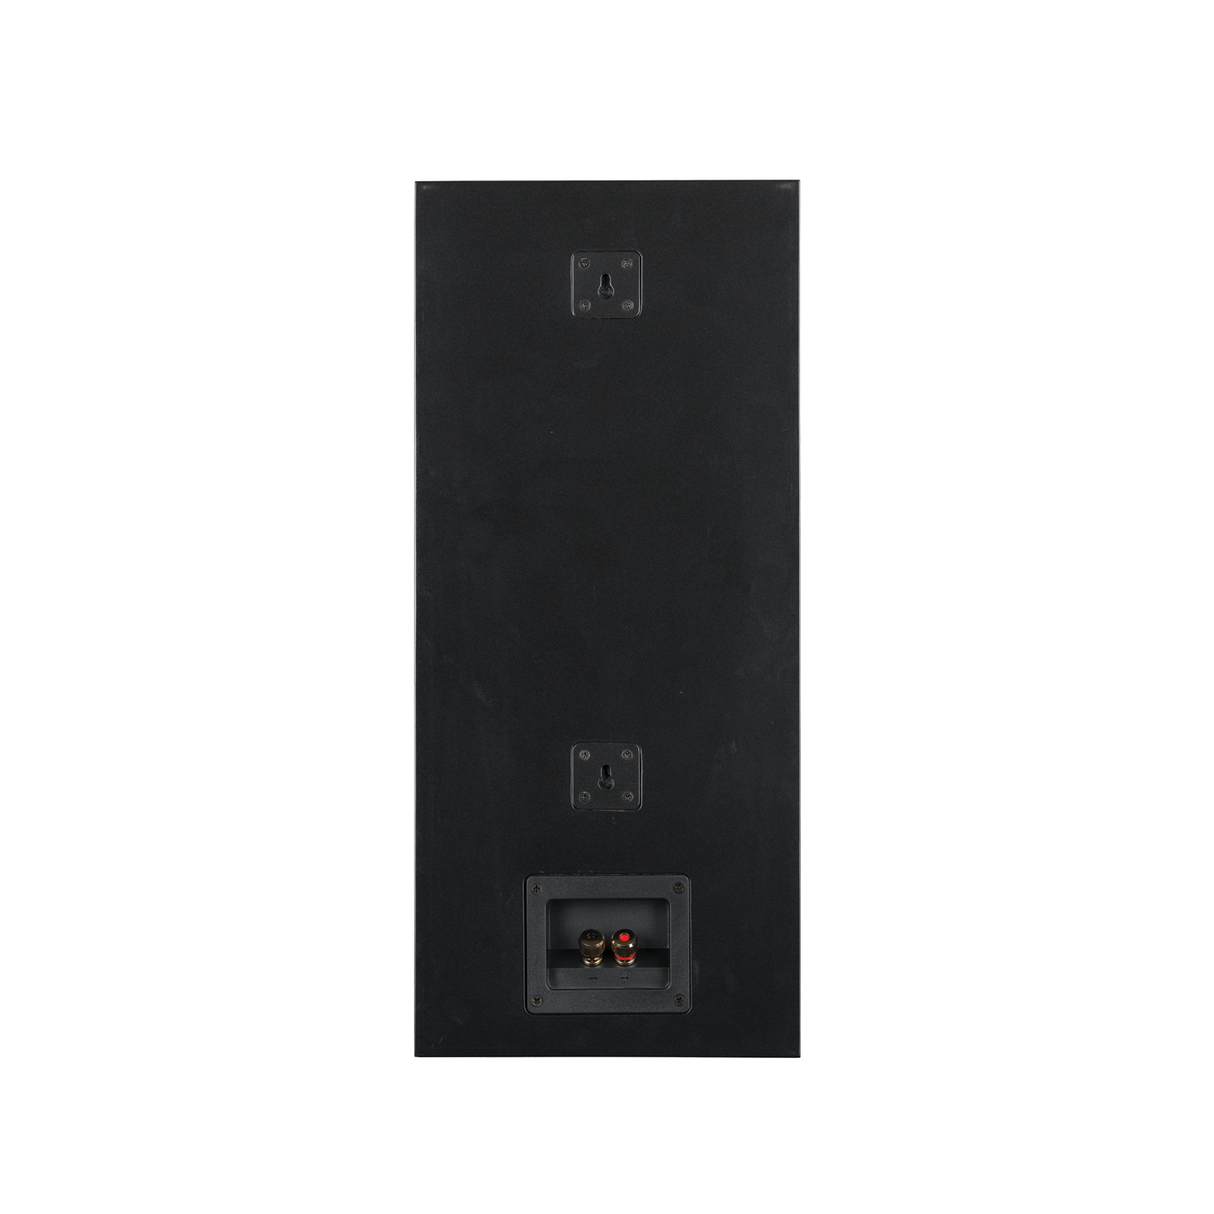 Sonodyne IWO-511 On-Wall/ In-Wall Speaker (Each)